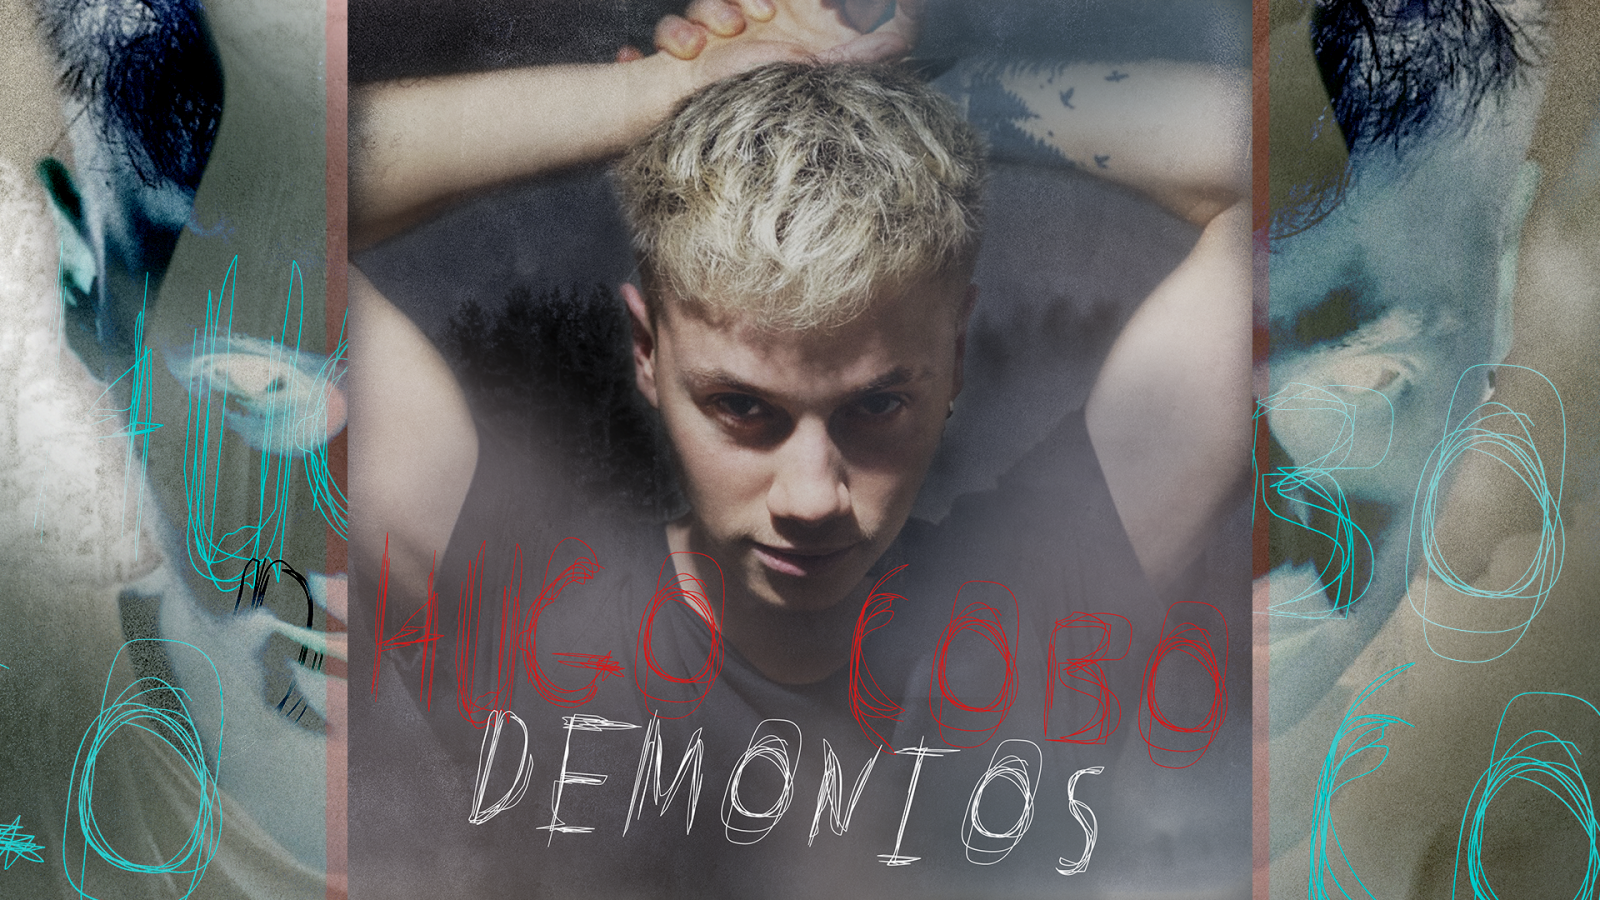 Portada de "Demonios", primer single de Hugo Cobo